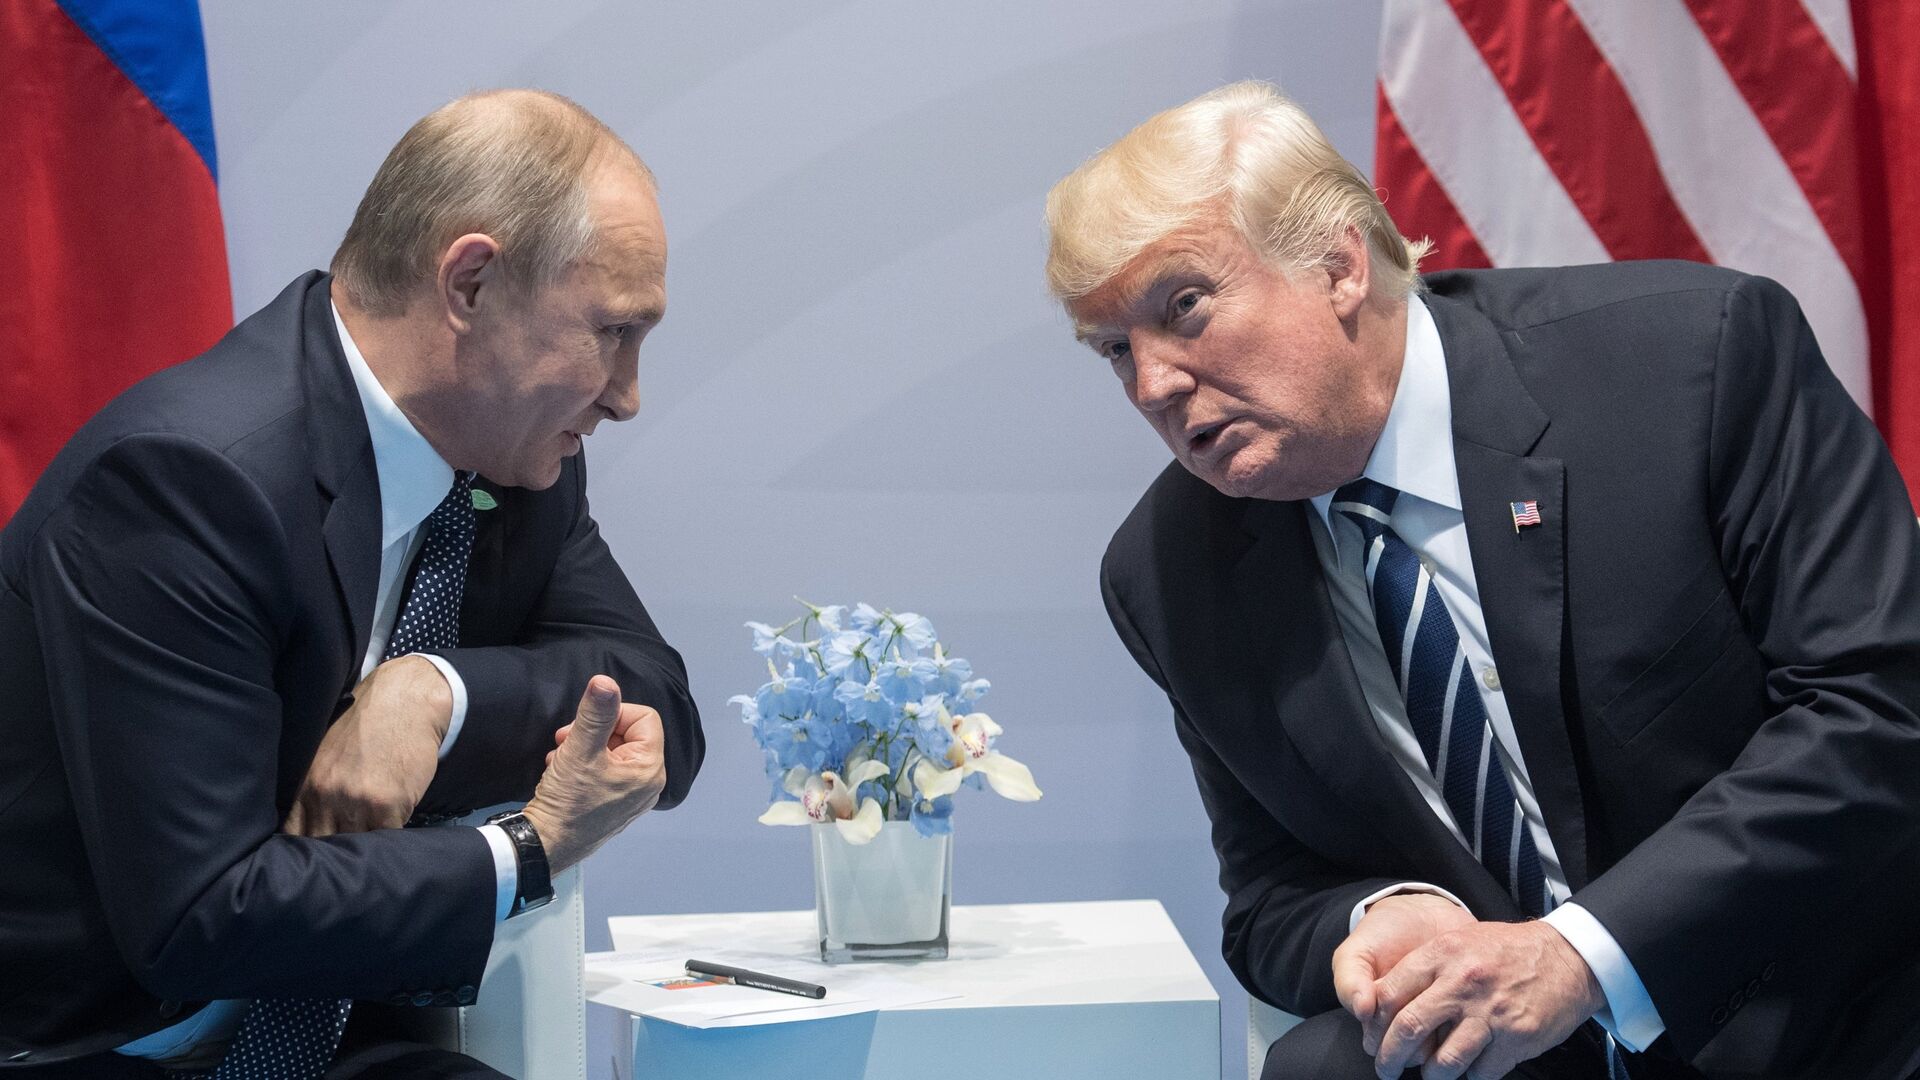 Президент РФ Владимир Путин и президент США Дональд Трамп во время беседы на полях саммита лидеров Группы двадцати G20 в Гамбурге. 7 июля 2017 - РИА Новости, 1920, 17.01.2021